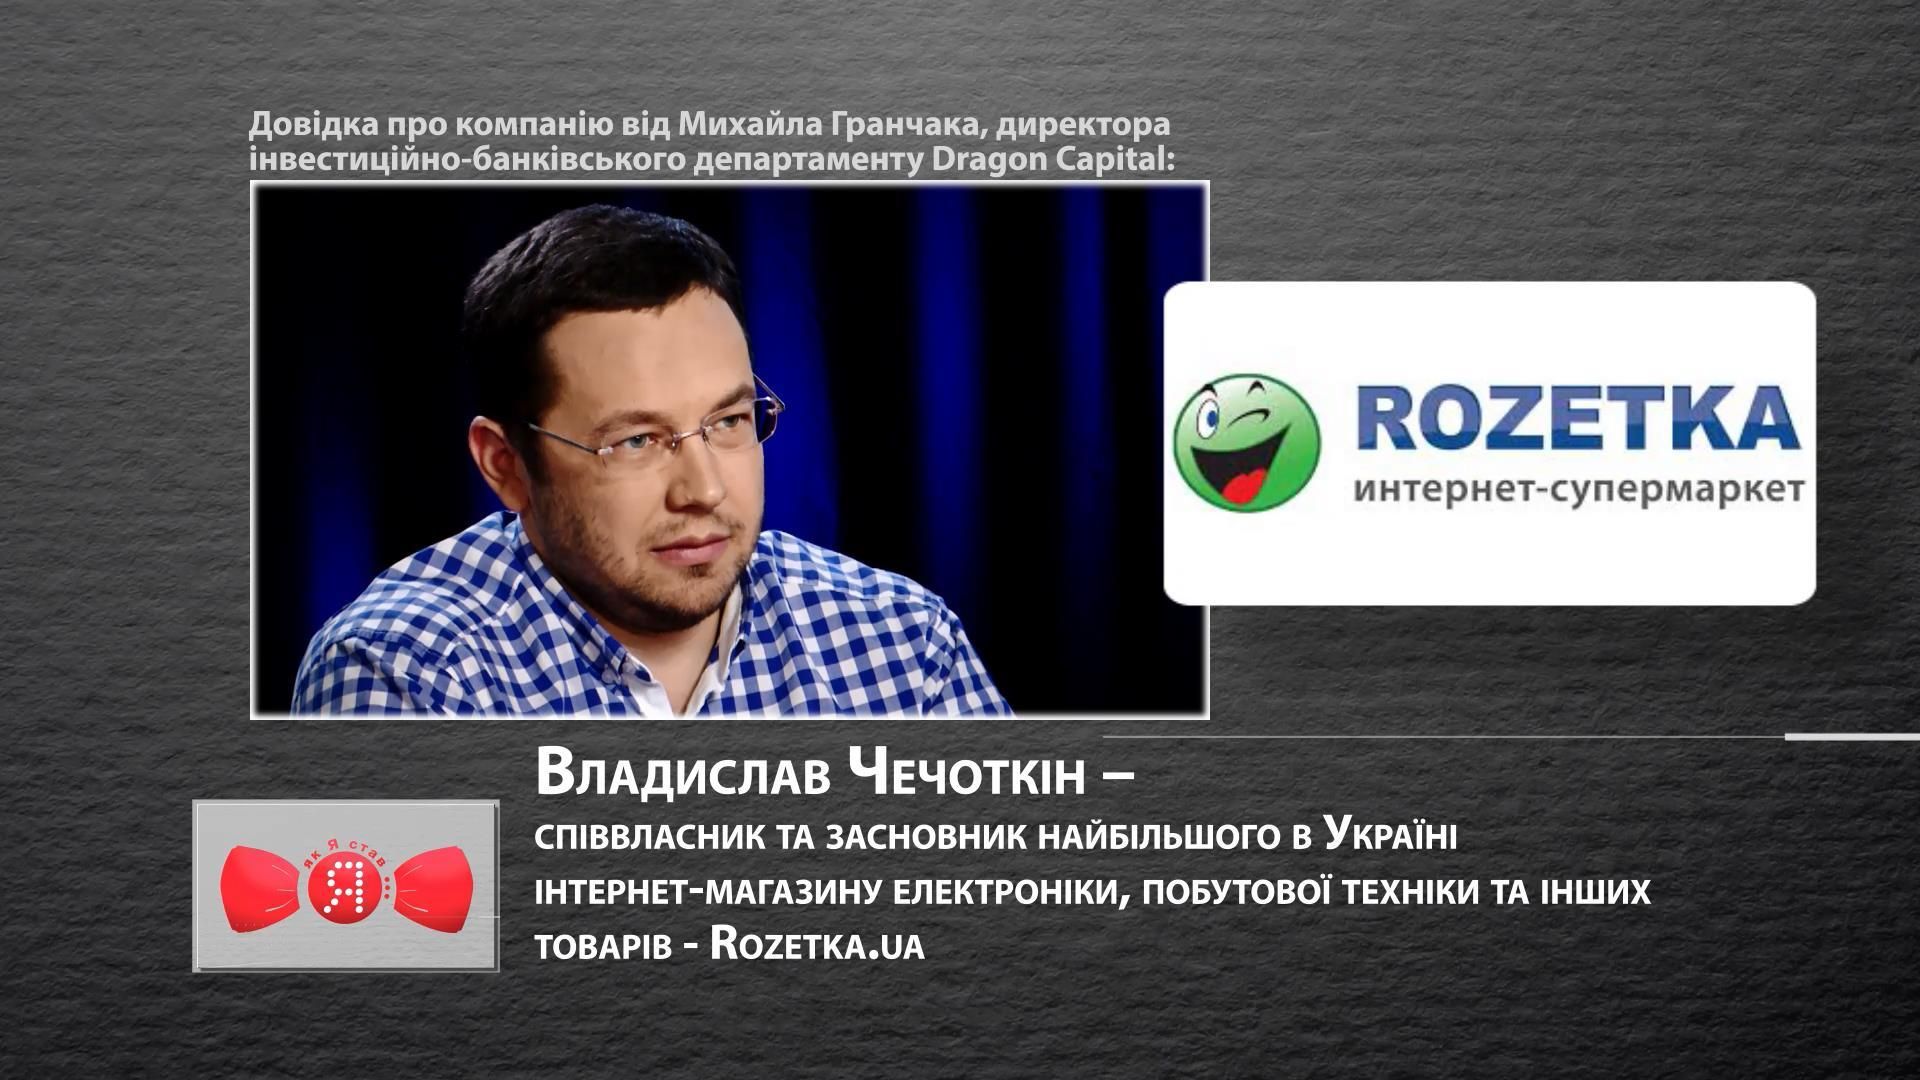 Соучредитель Rozetka.ua о том, как быть успешным в Украине и вести бизнес вместе с женой